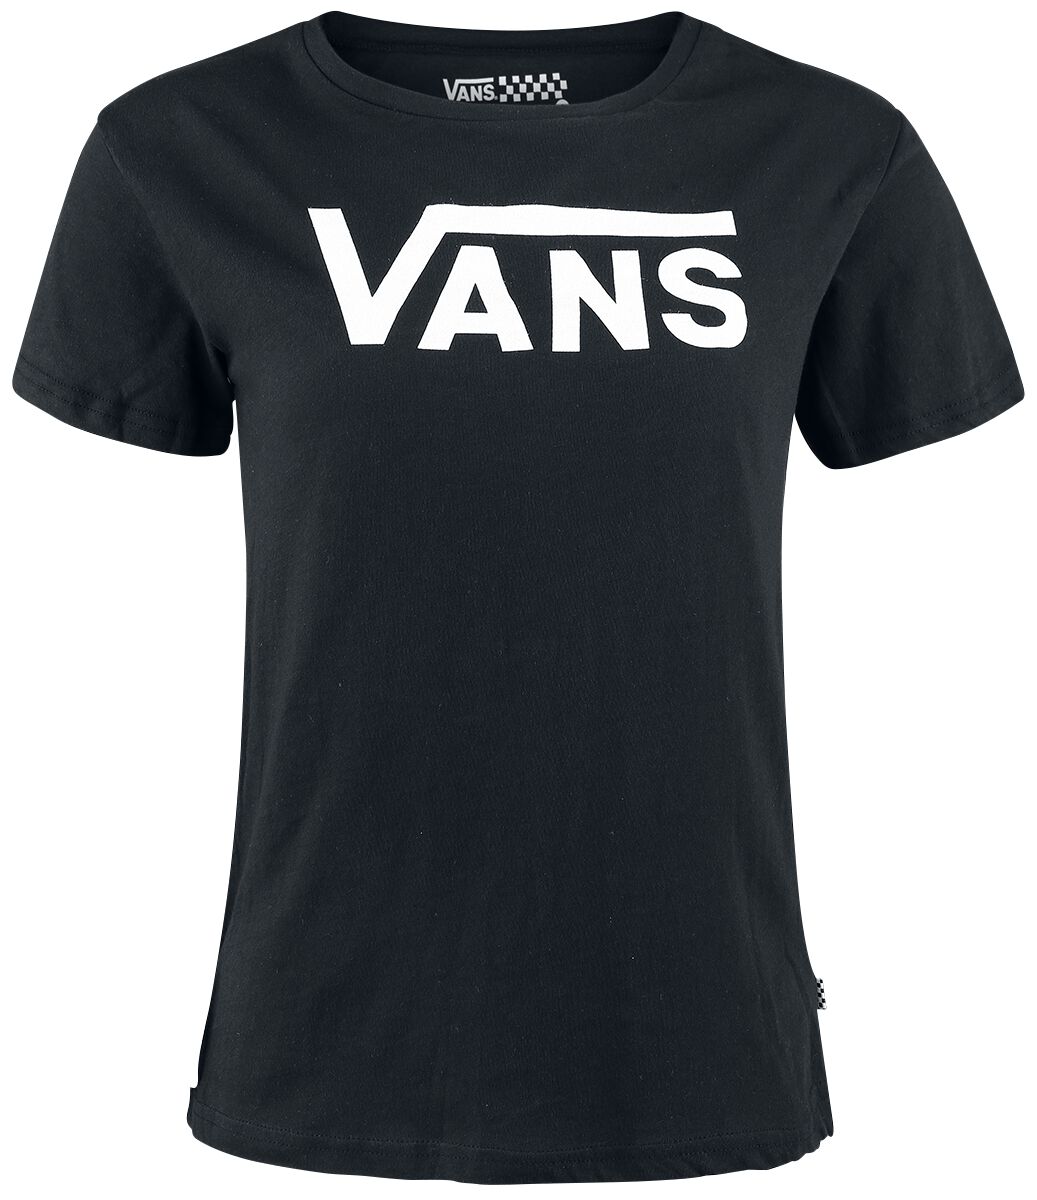 T-Shirt Manches courtes de Vans - Flying V Crew - XS à XL - pour Femme - noir